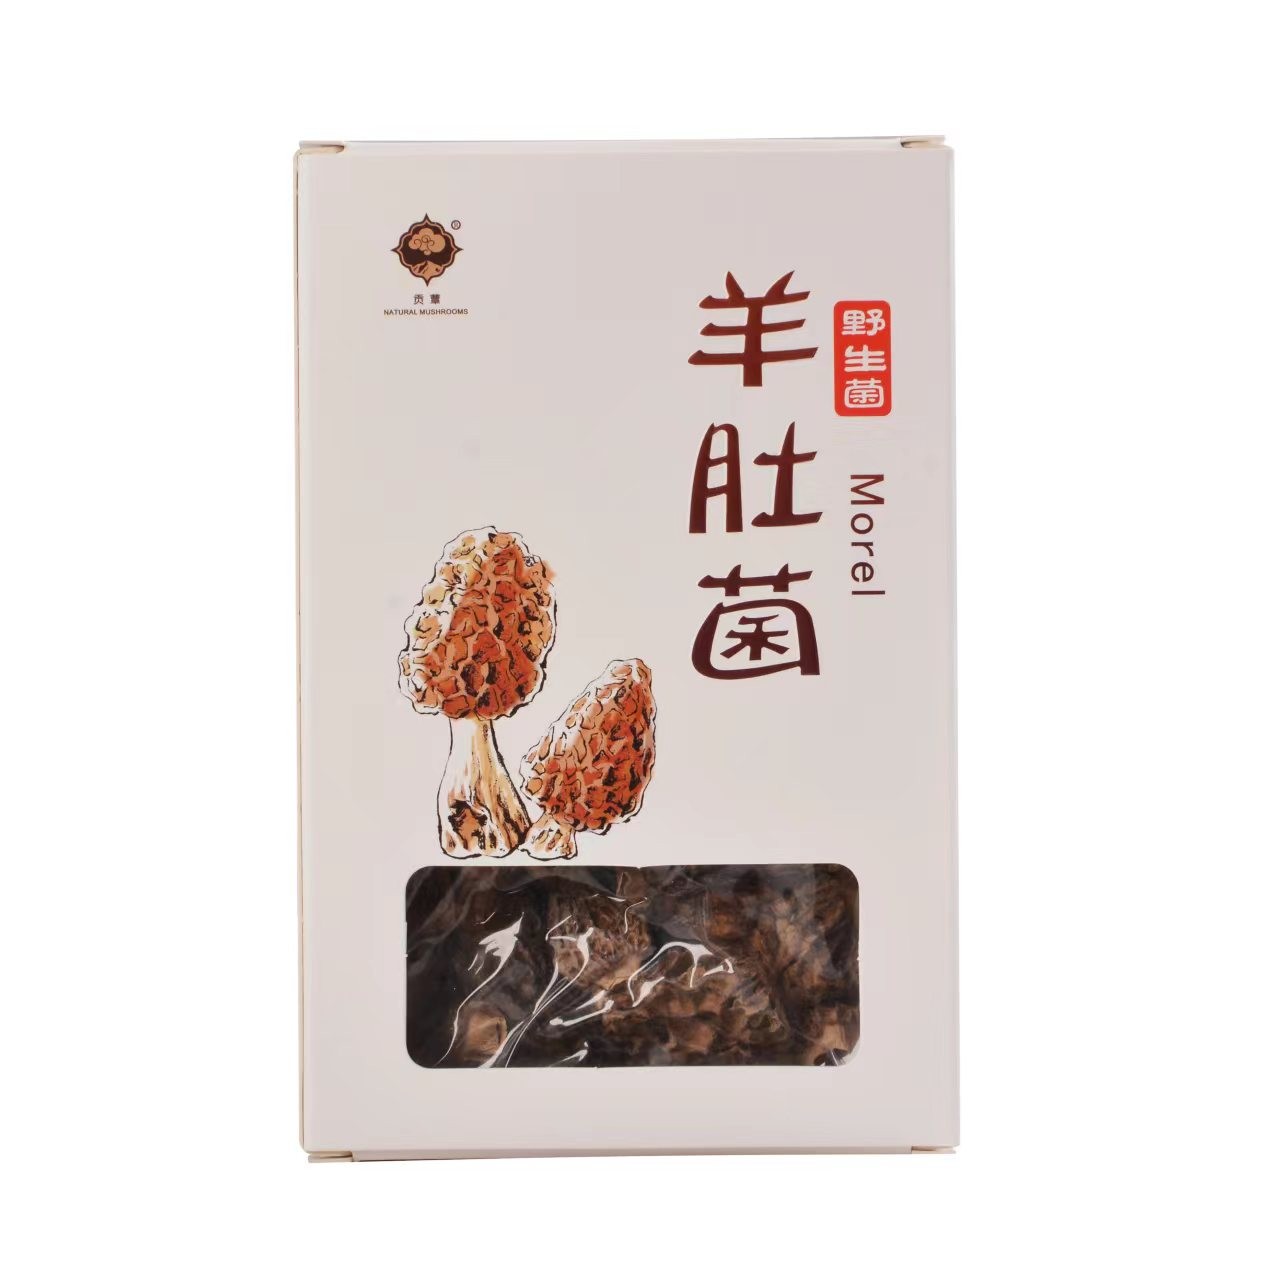 甘孜县天源食品：提供天然珍贵食材 打造中国原生态食品高端品牌